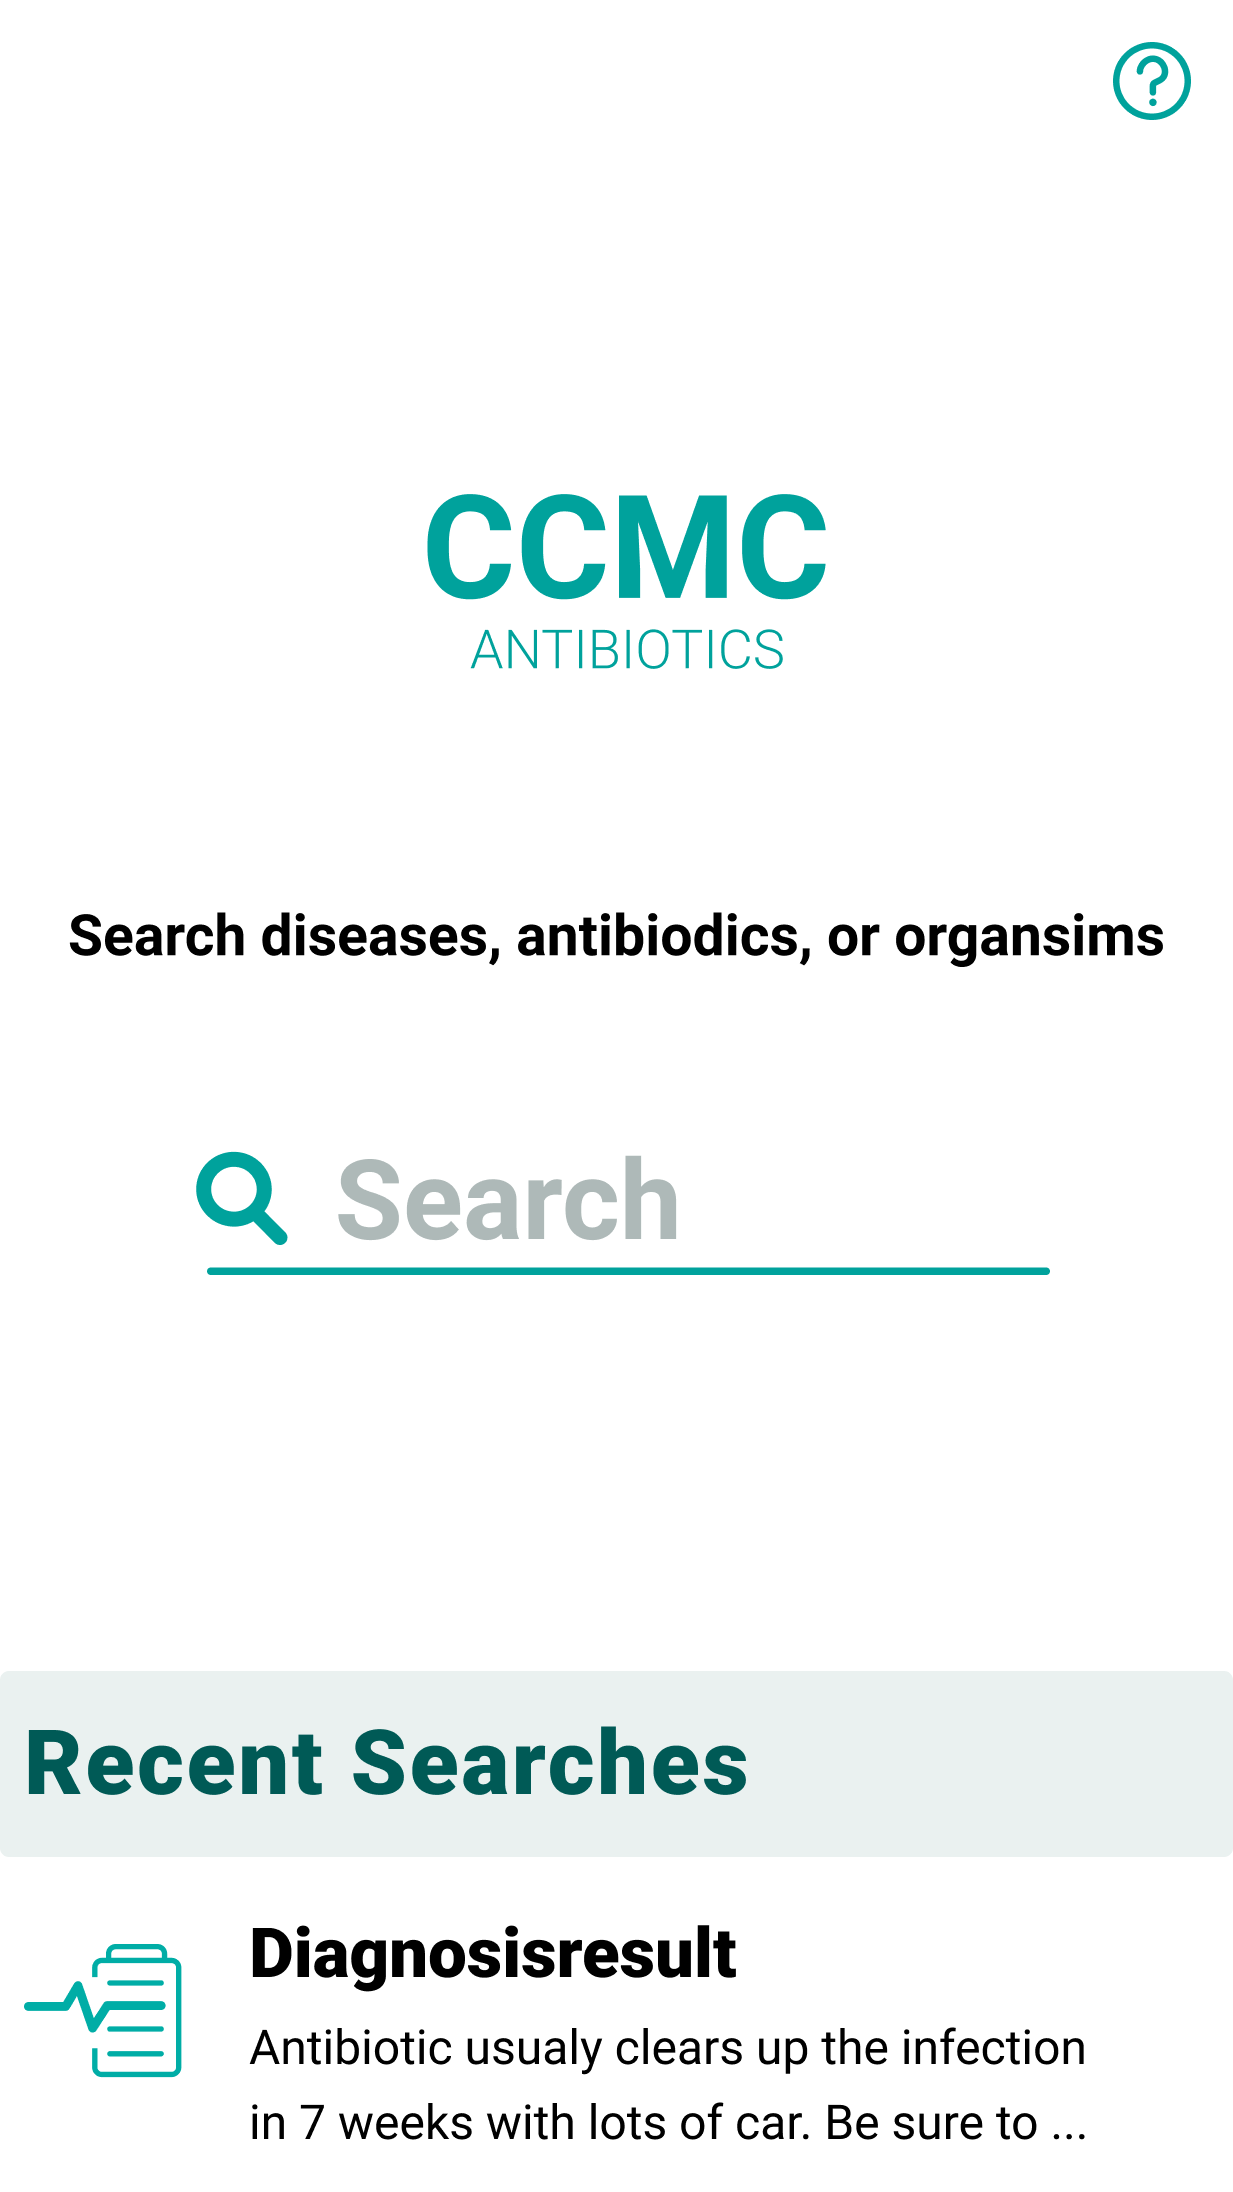 CCMC antibiotics